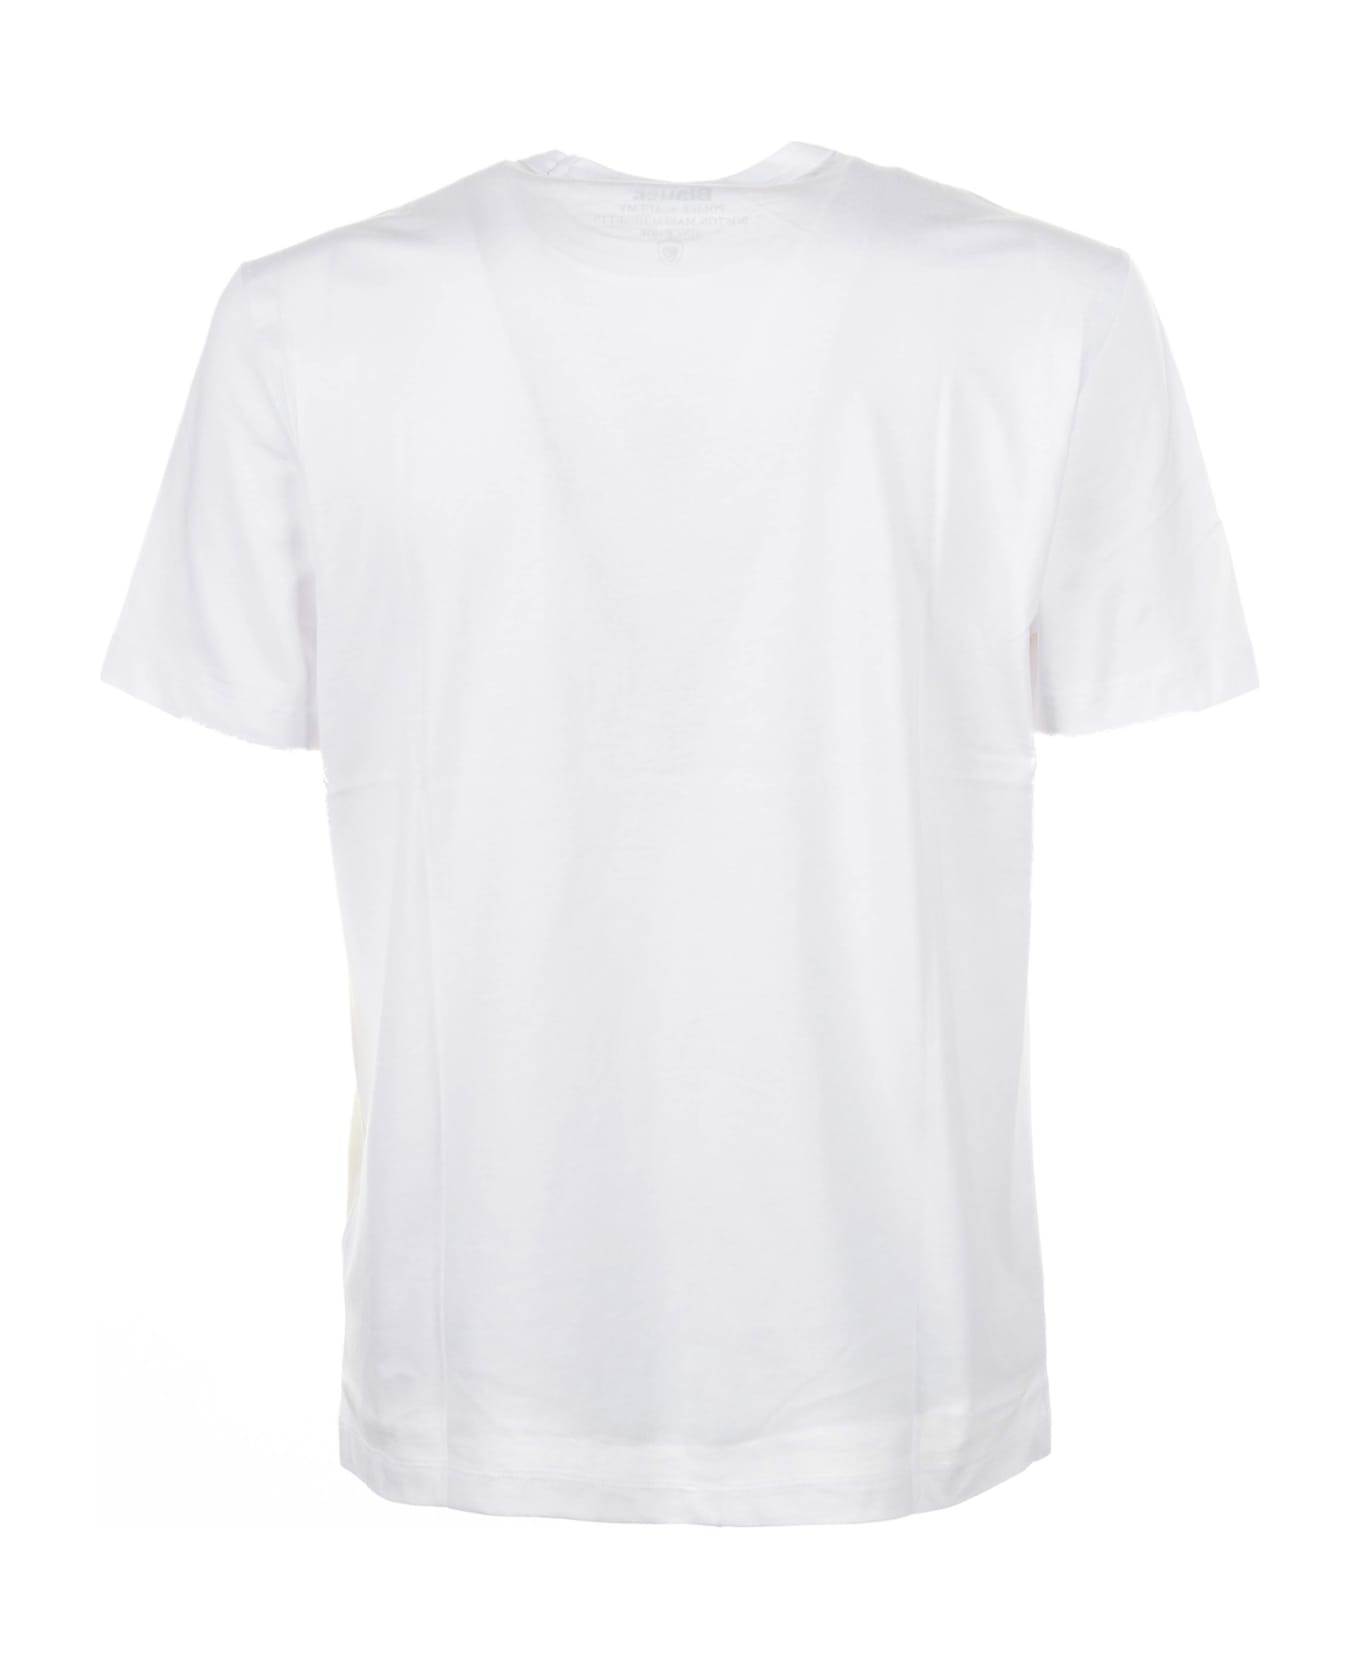 Blauer White Cotton T-shirt - BIANCO OTTICO シャツ